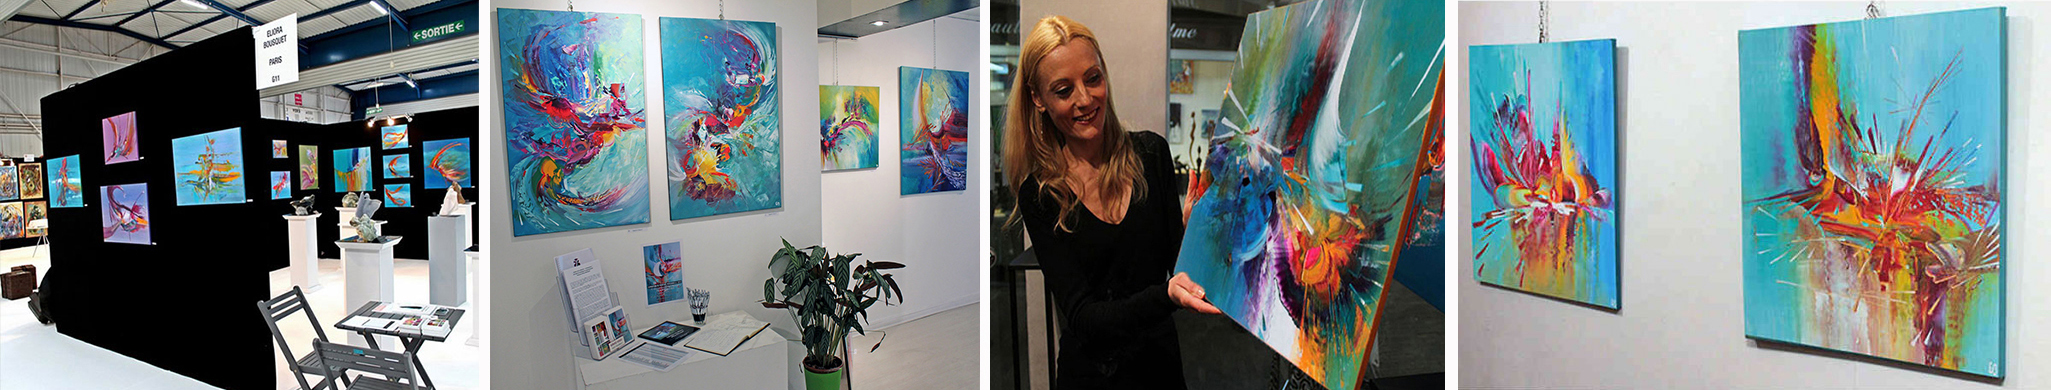 L'artiste-Peintre Eliora Bousquet présente ses tableaux lors d'expositions de peinture